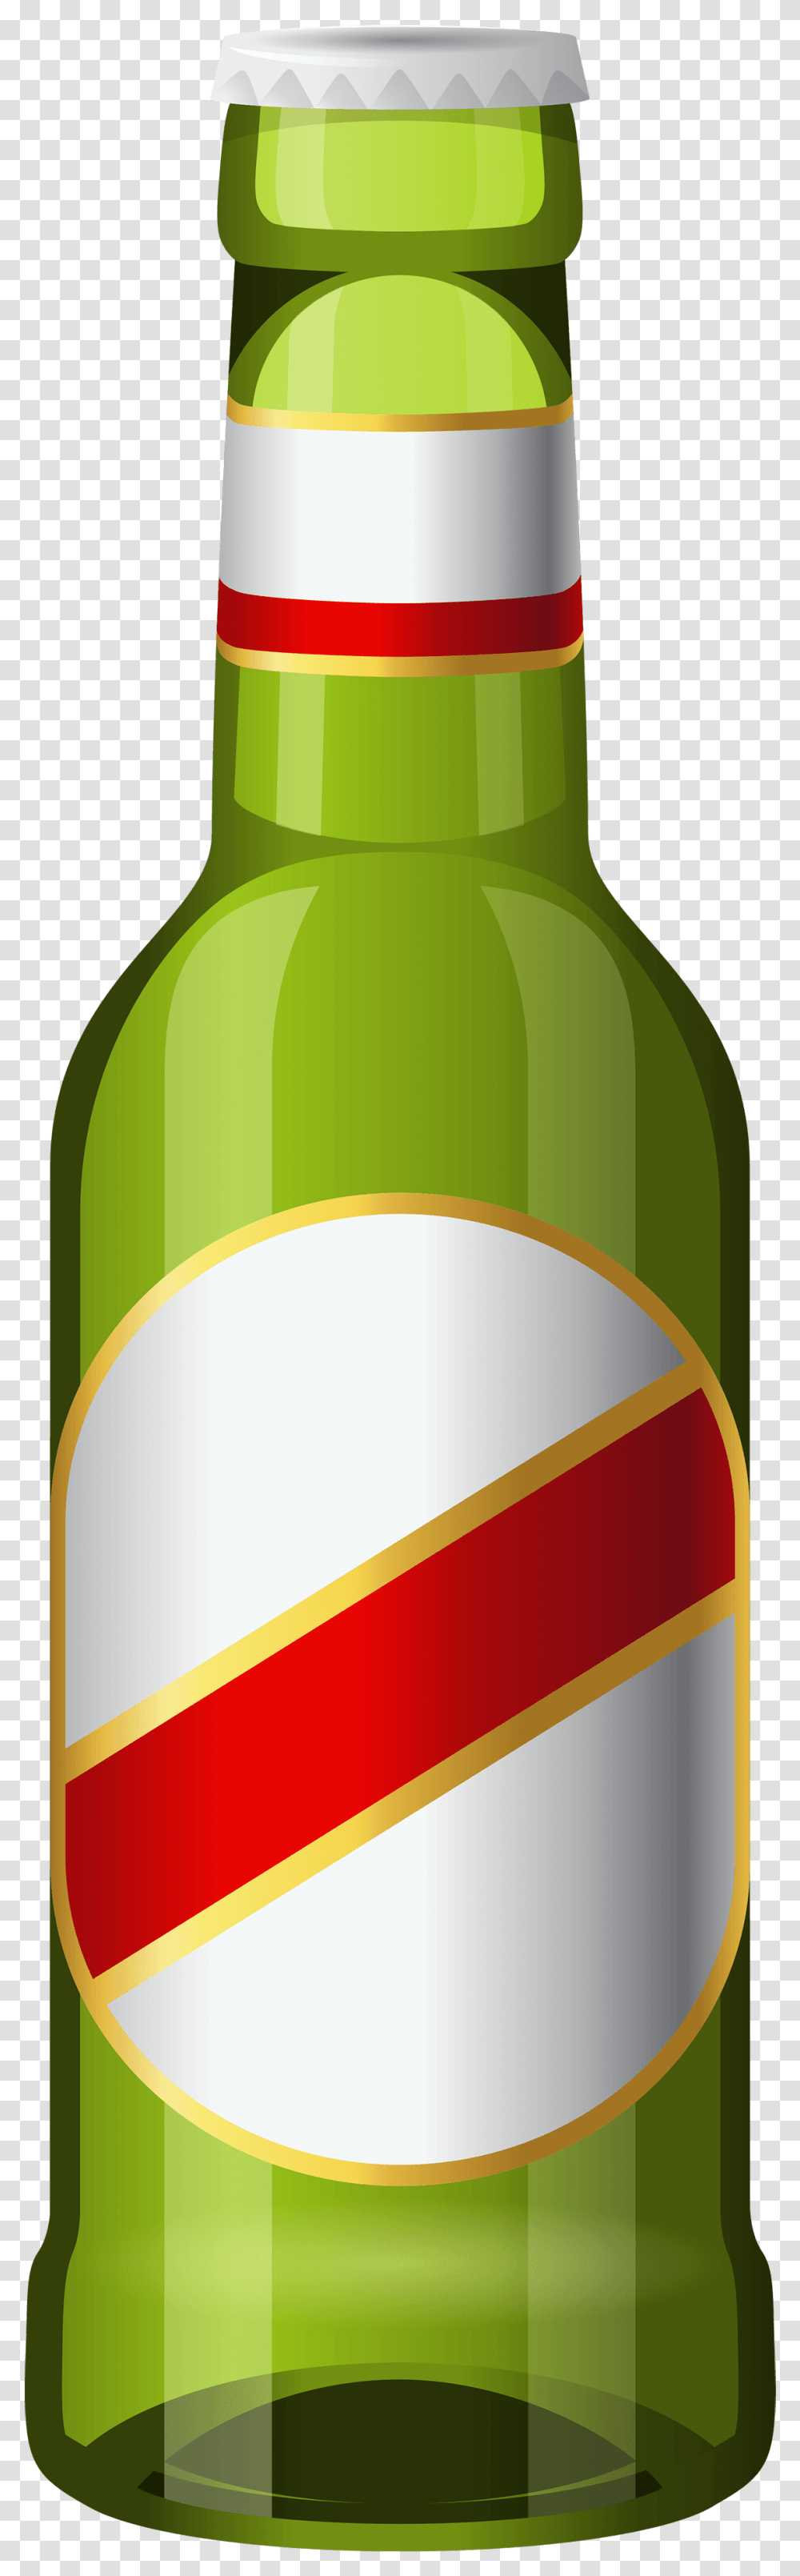 Cartoon Beer Bottle Clipart Clip Art Beer Bottle, Alcohol, Beverage, Drink, Wine Transparent Png